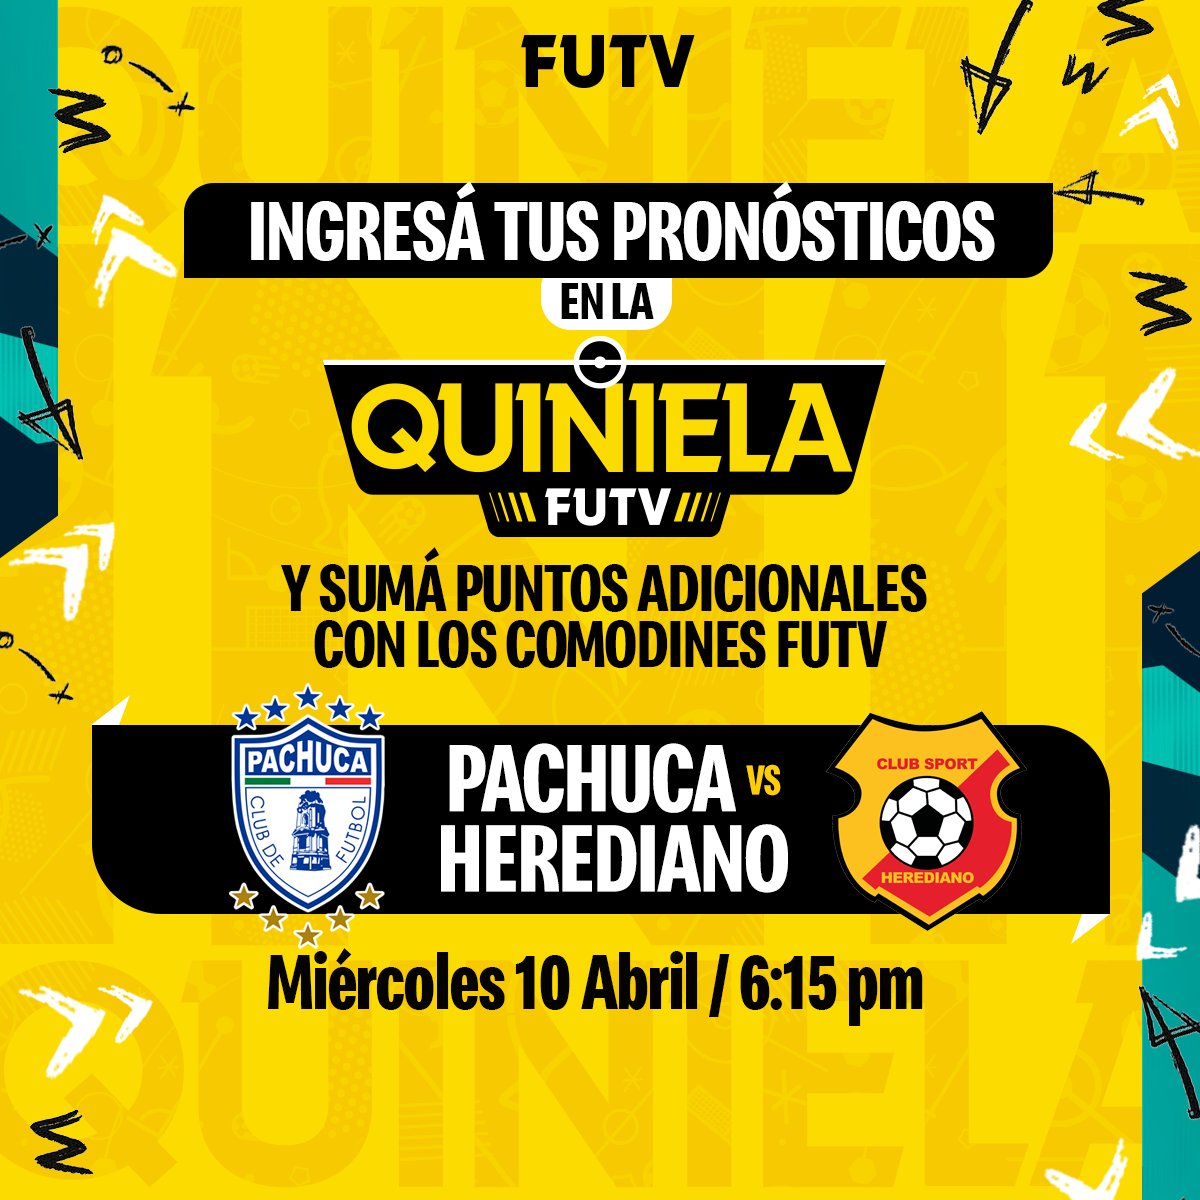 ¡Ingresá tu pronóstico! ⚽📝

Comodín en la #QuinielaFUTV de Liga de Campeones de Concacaf  🏆😎

- Pachuca 🇲🇽 vs Herediano 🇨🇷

🔗 quiniela.futvcr.com